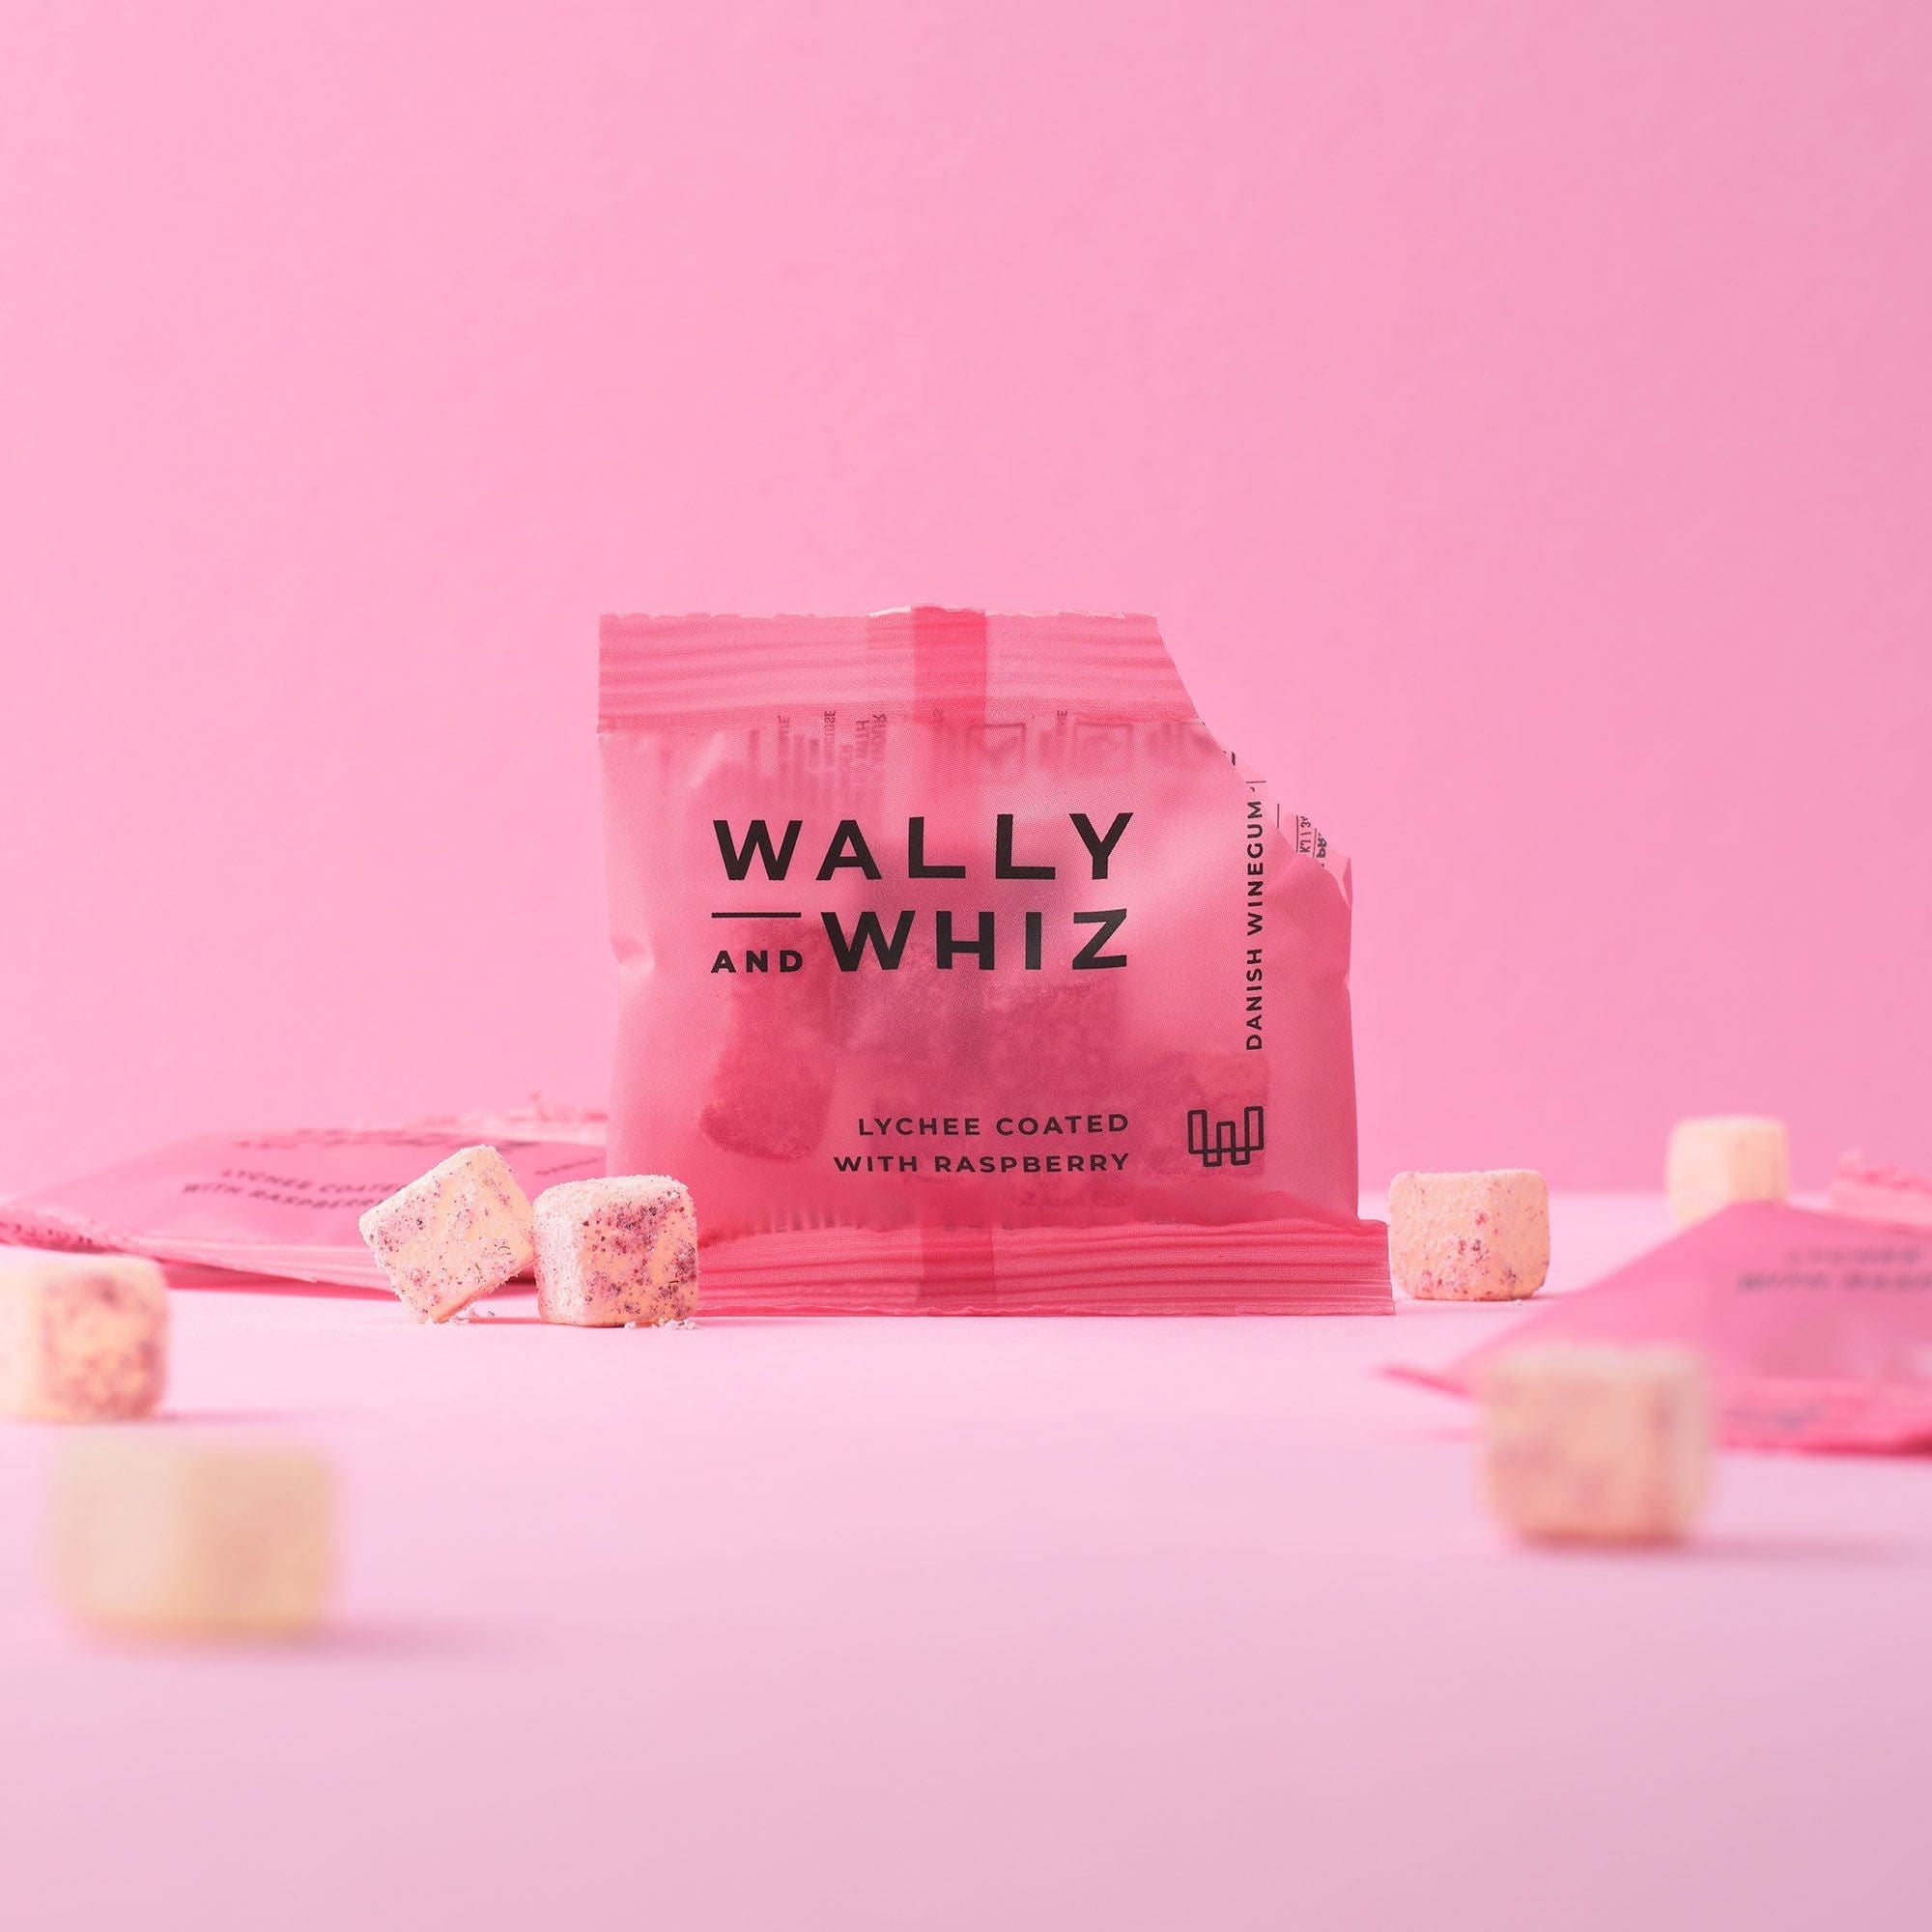 Wally and Whiz Älskar Windumi Box med 200 flödespackar, litchi med hallon